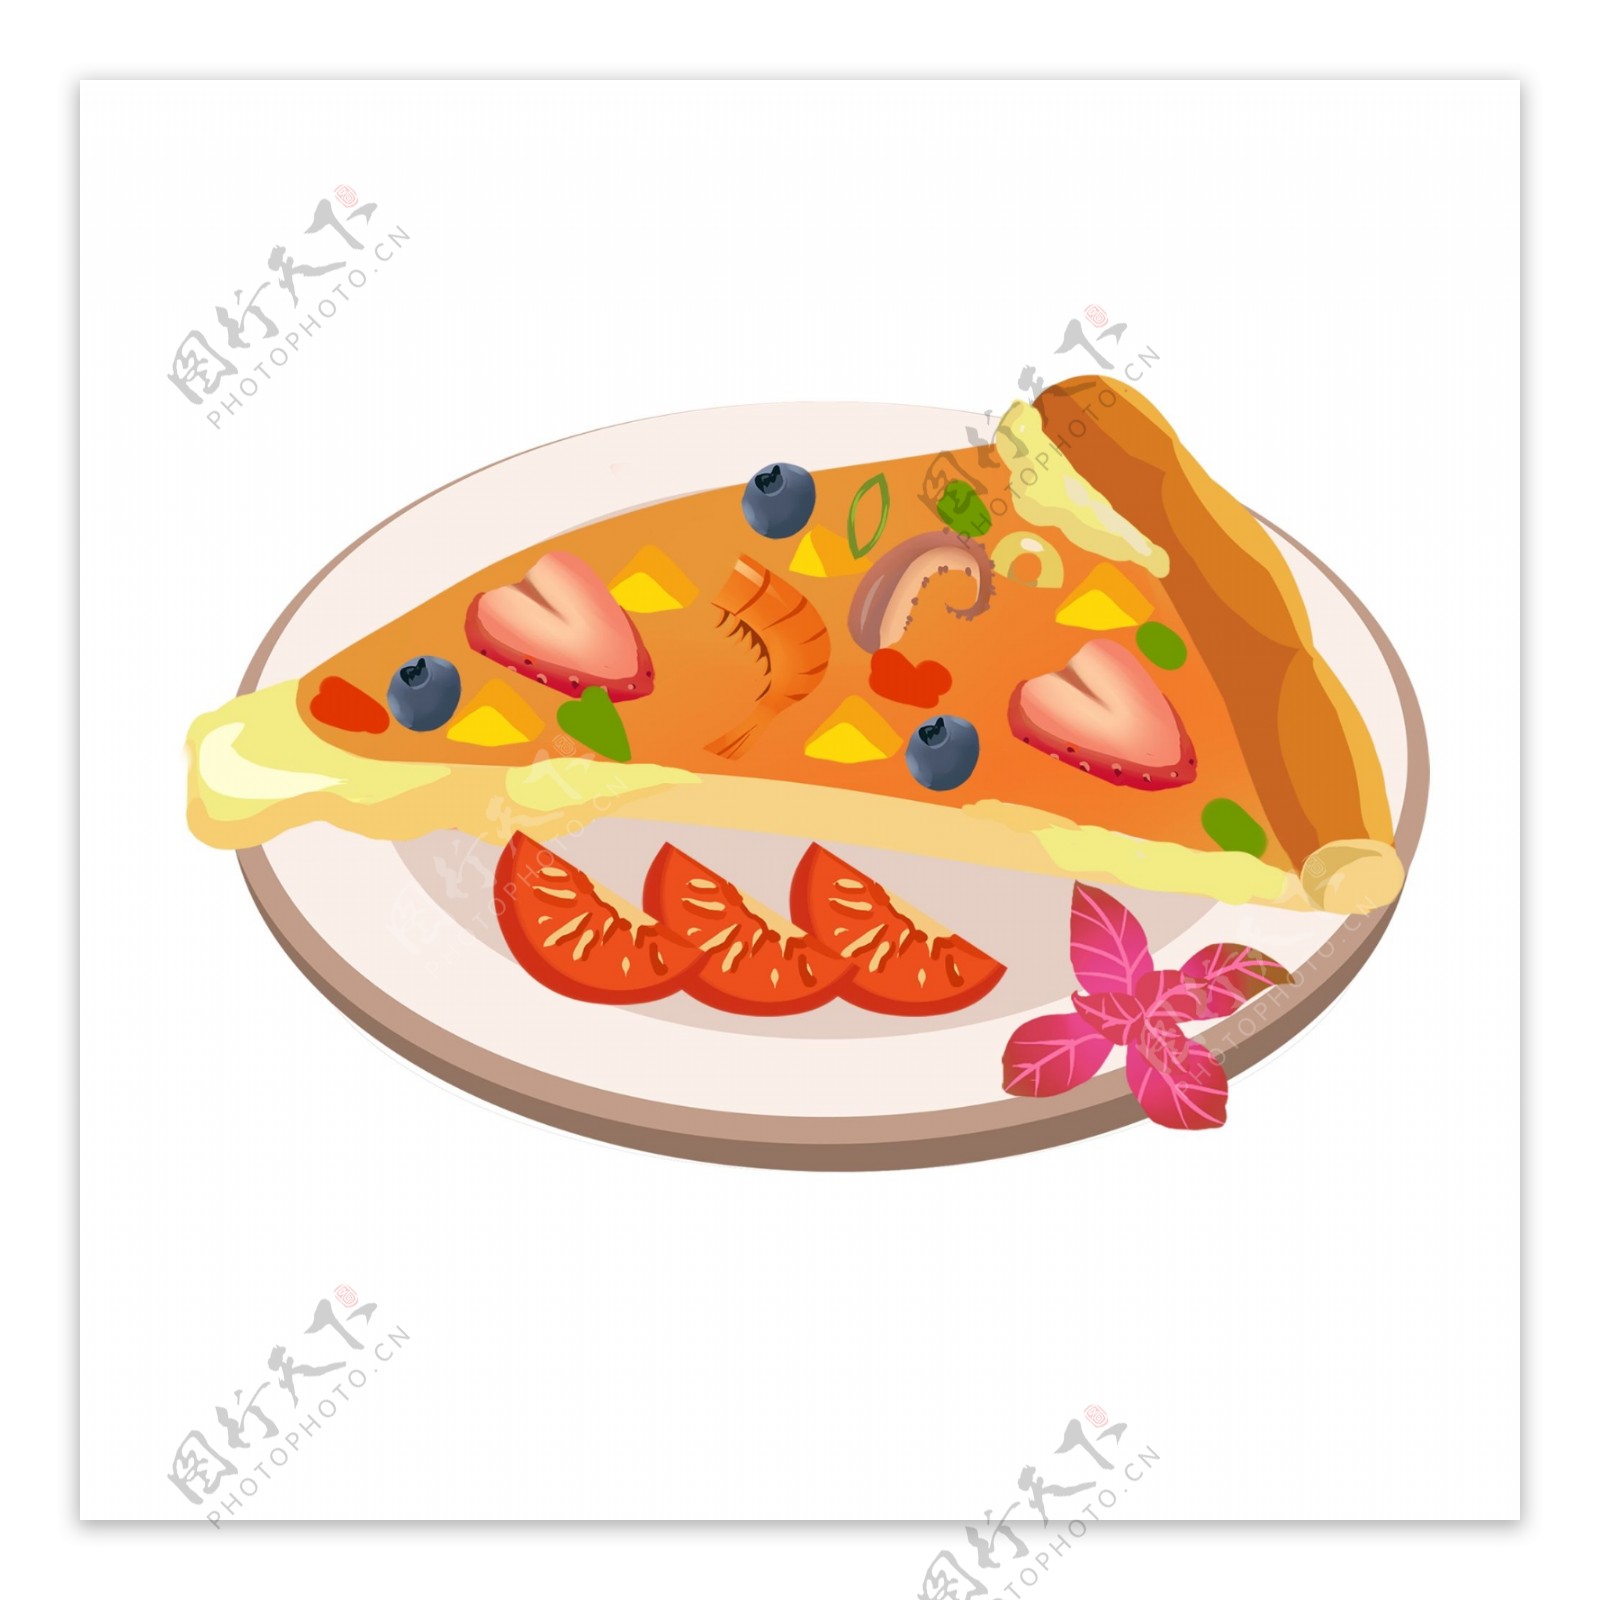 手绘美食食物水果披萨pizza